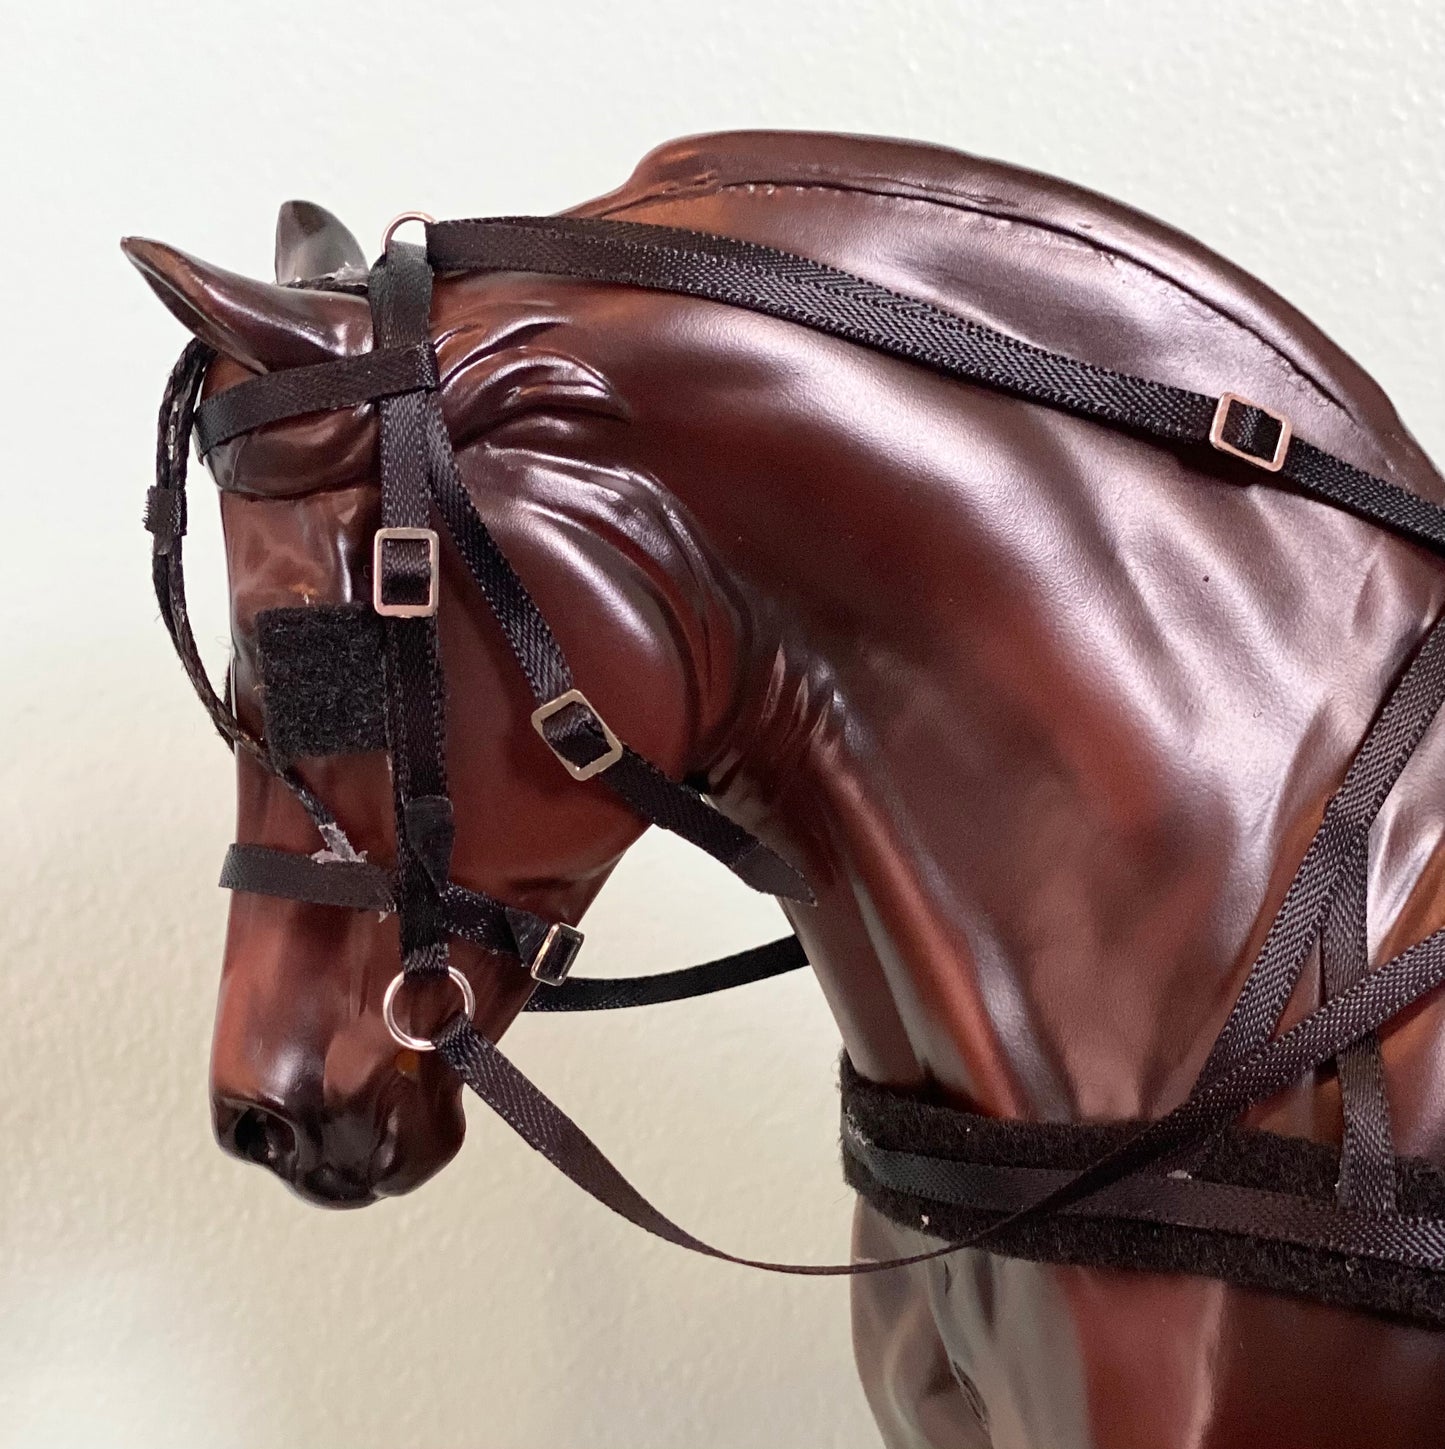 Breyer Model Horse Deluxe Driving Harness